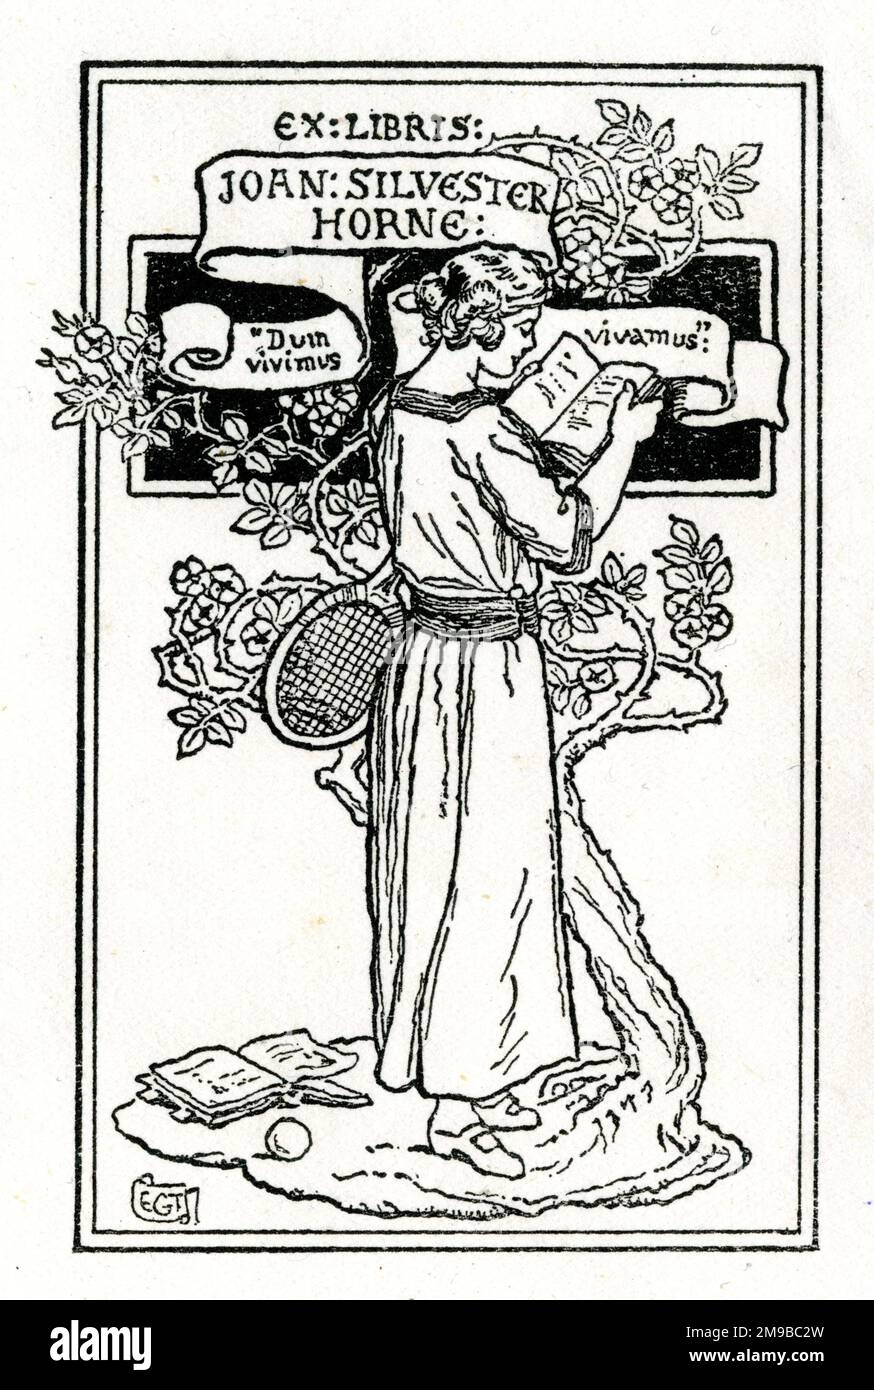 Ex Libris Bookplate, Joan Silvester Horne, femme lisant un livre avec une raquette de tennis sous son bras Banque D'Images